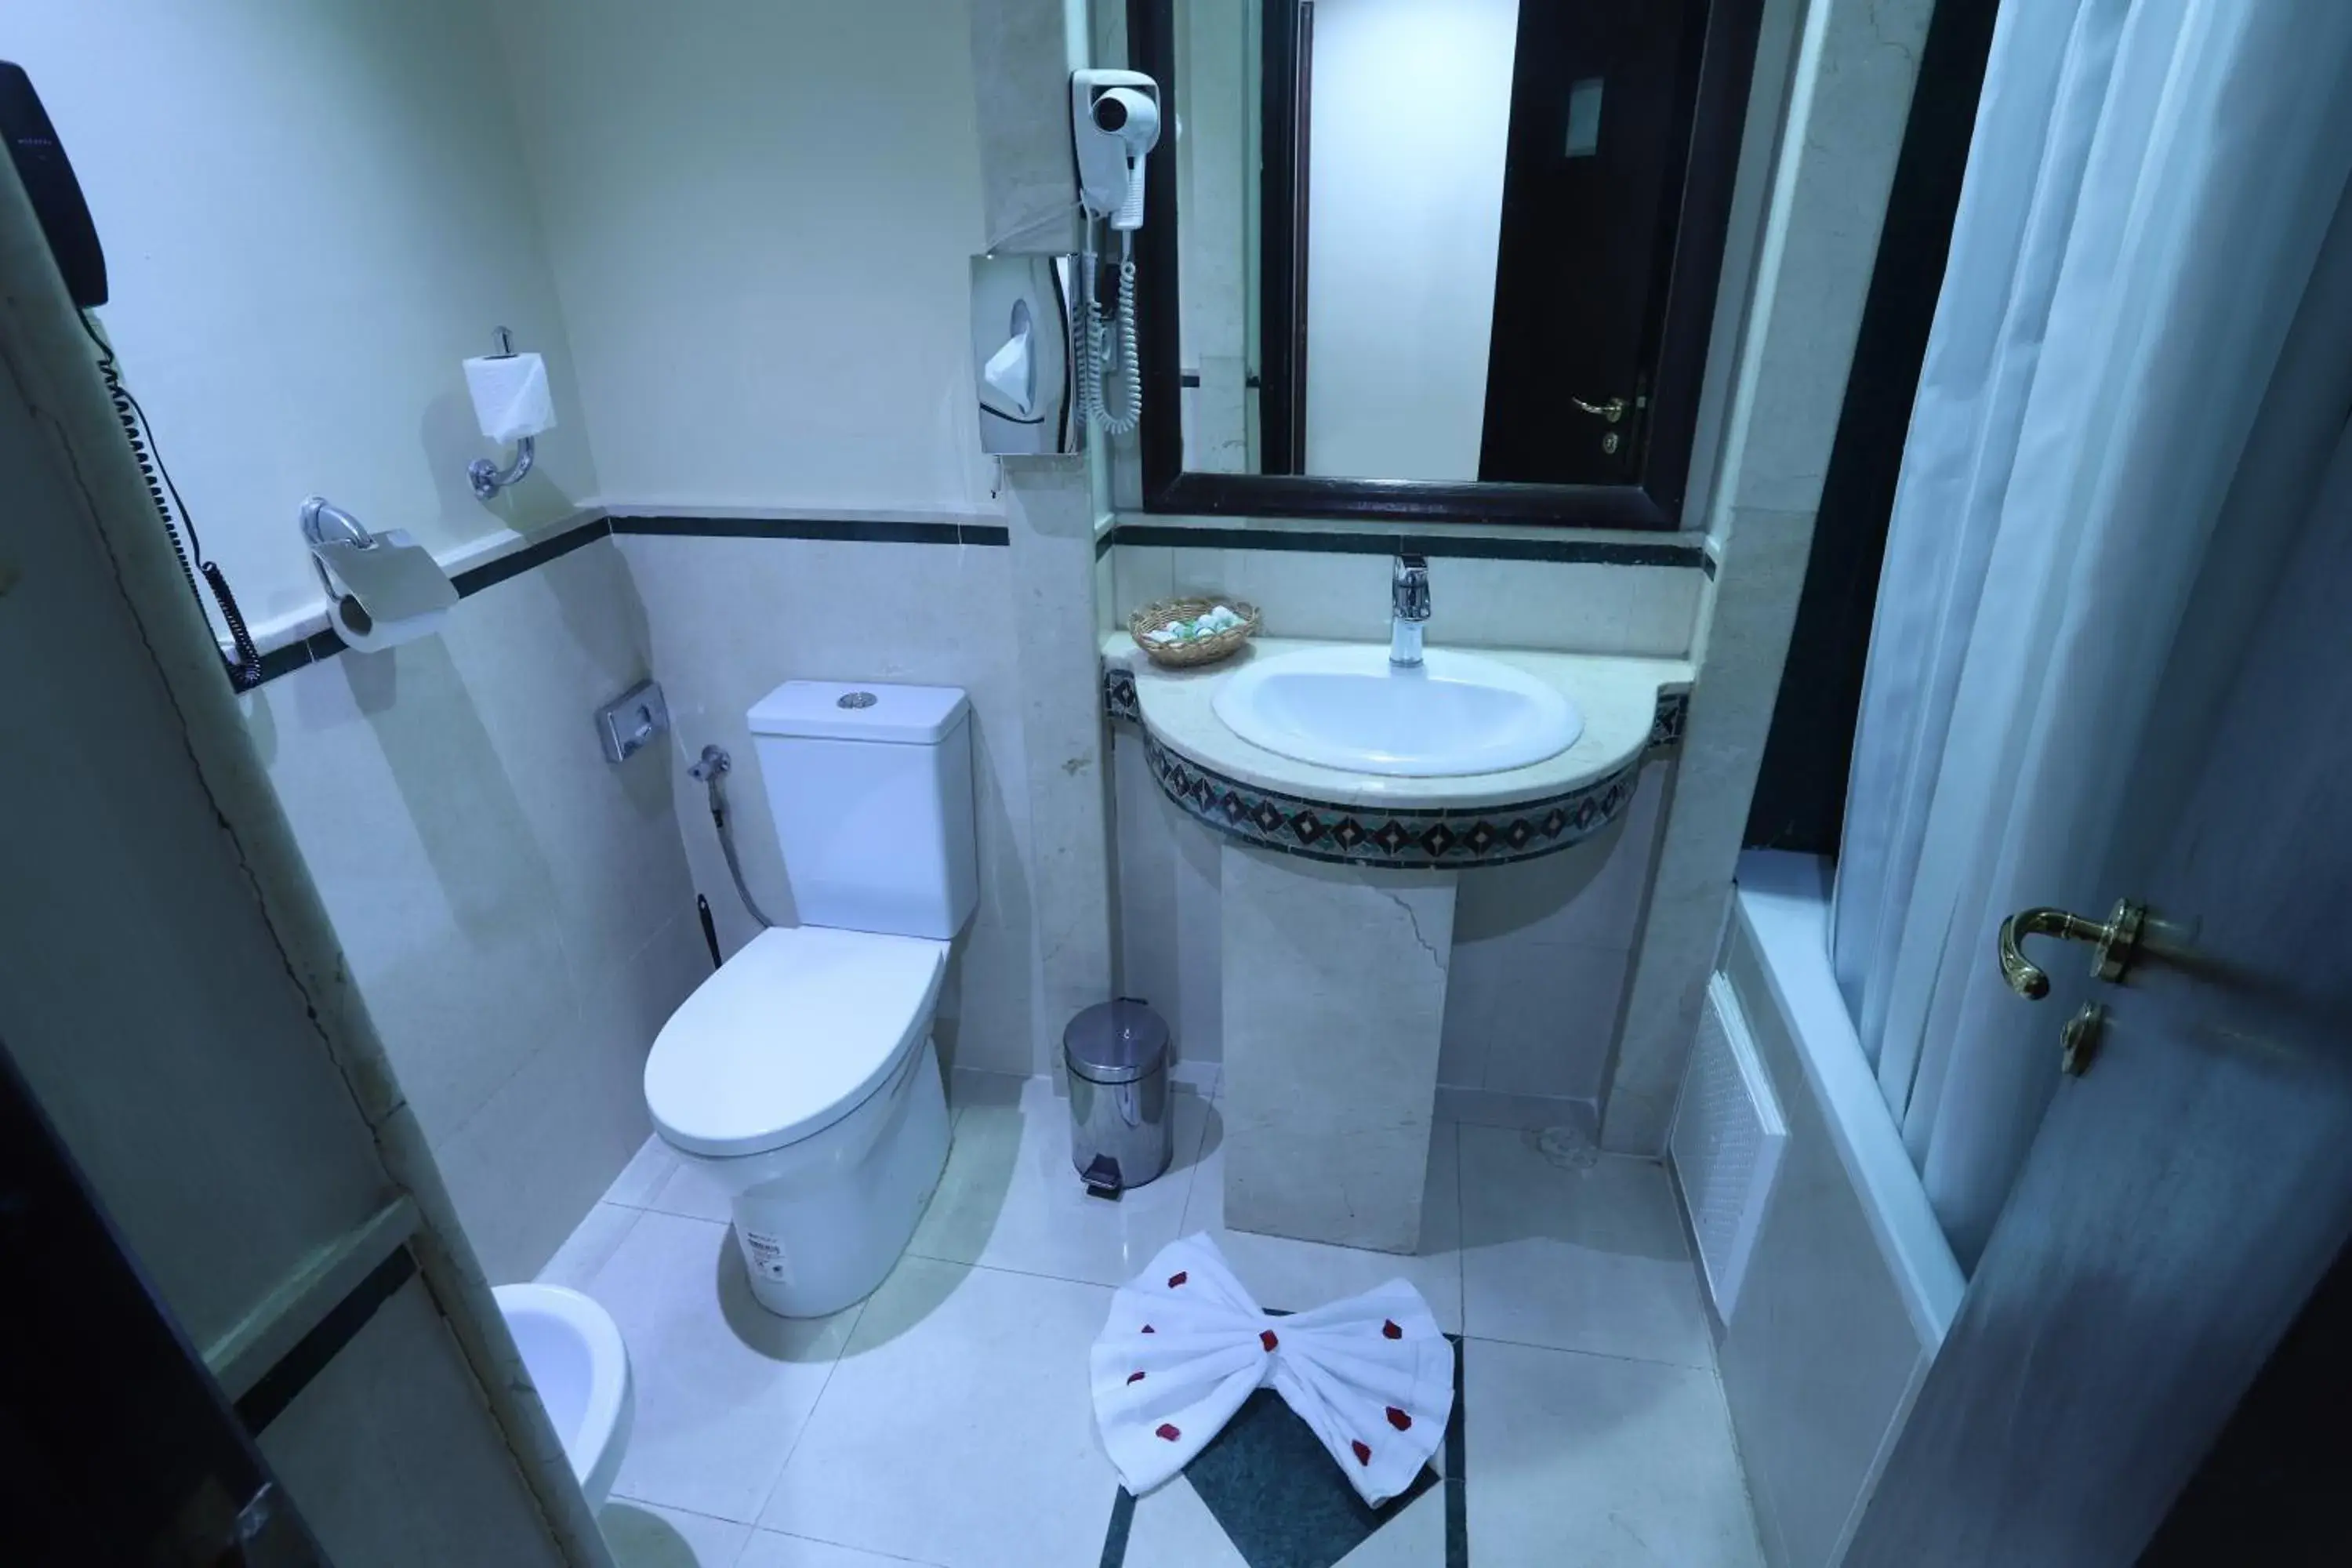 Toilet, Bathroom in Helnan Chellah Hotel